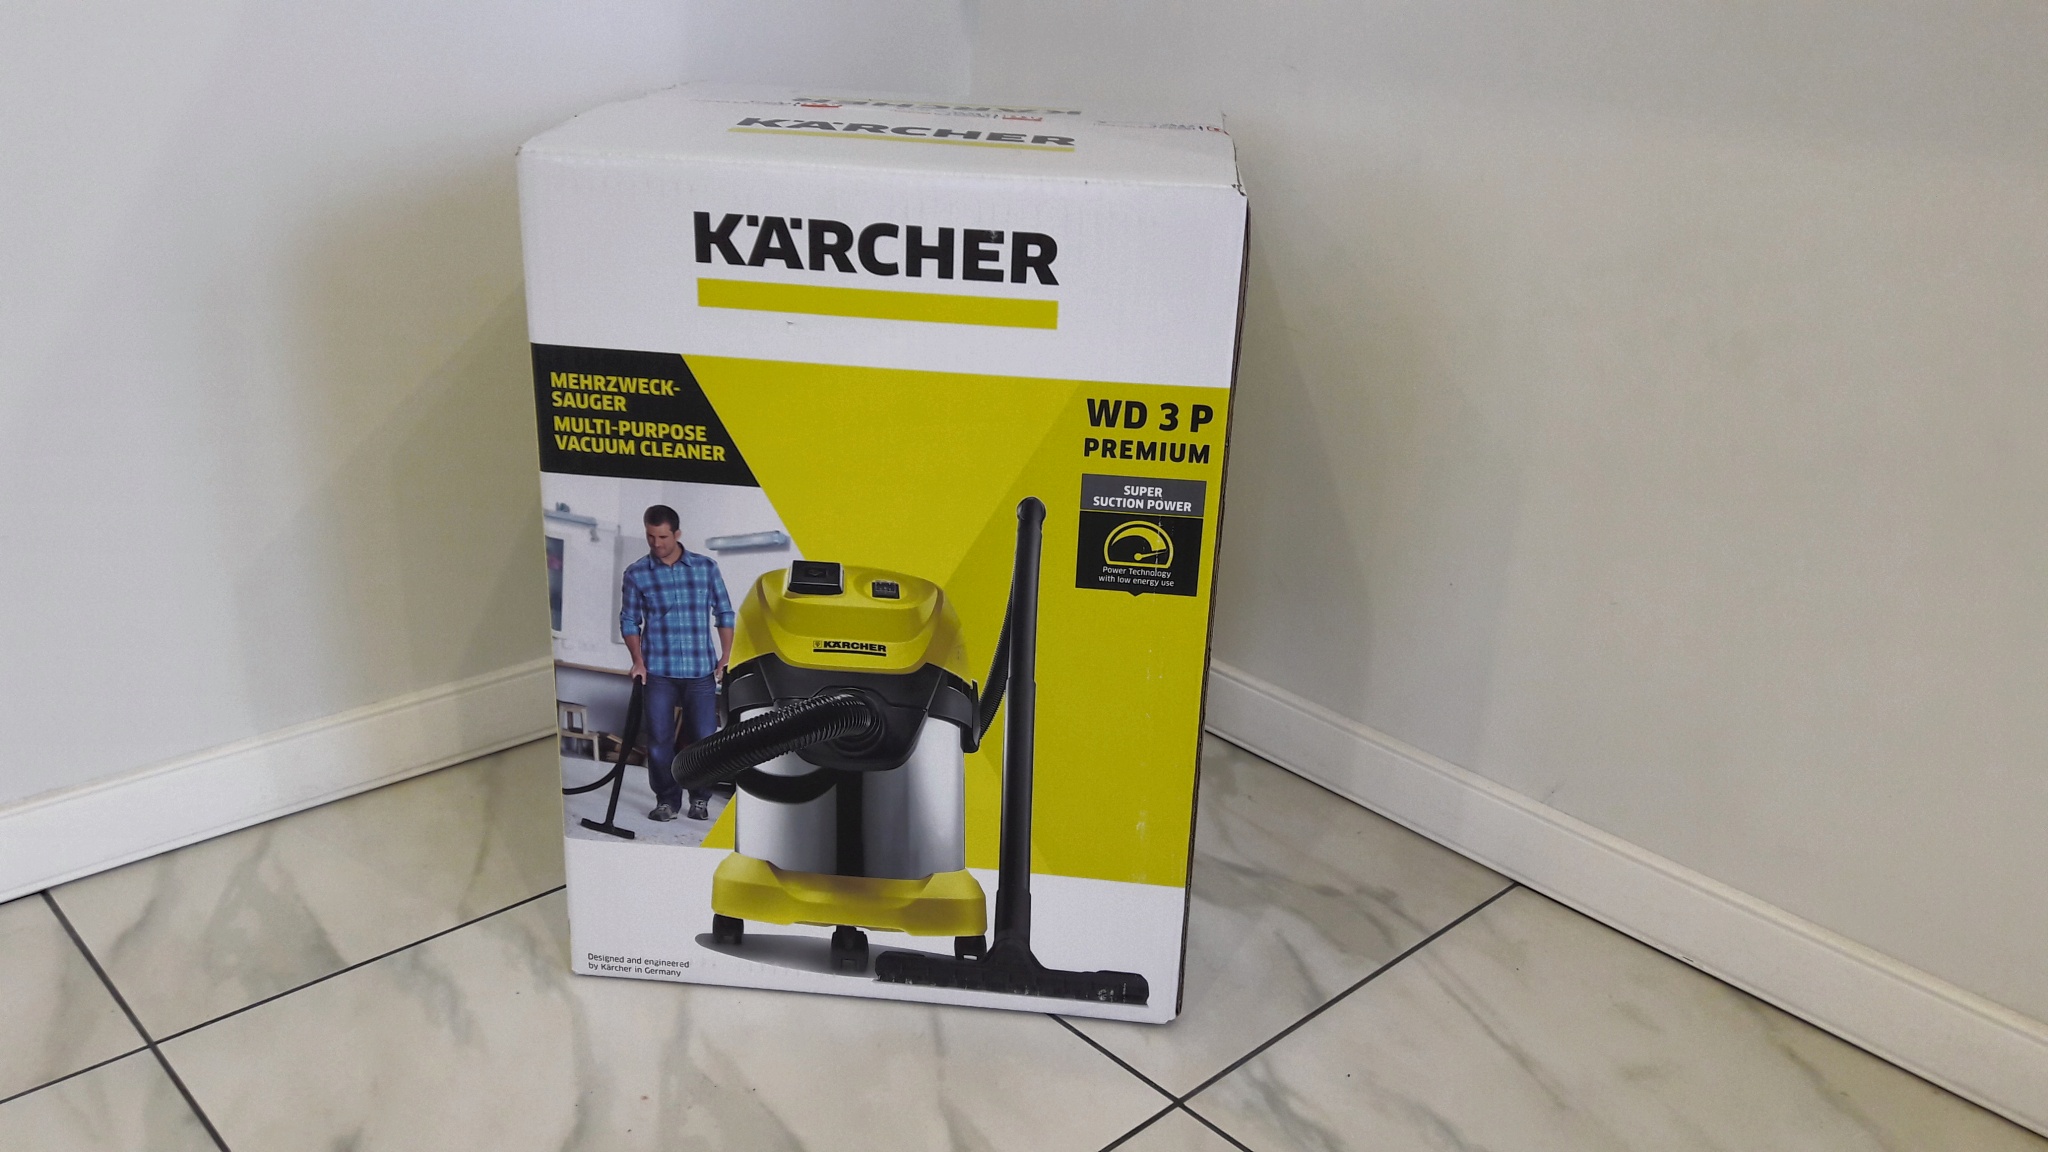 Karcher WD 3p комплектация. Karcher WD 3 P Premium. Karcher wd3 p Premium габариты. Karcher WD 3 P Premium аксессуары. Пылесос karcher wd 3 p купить